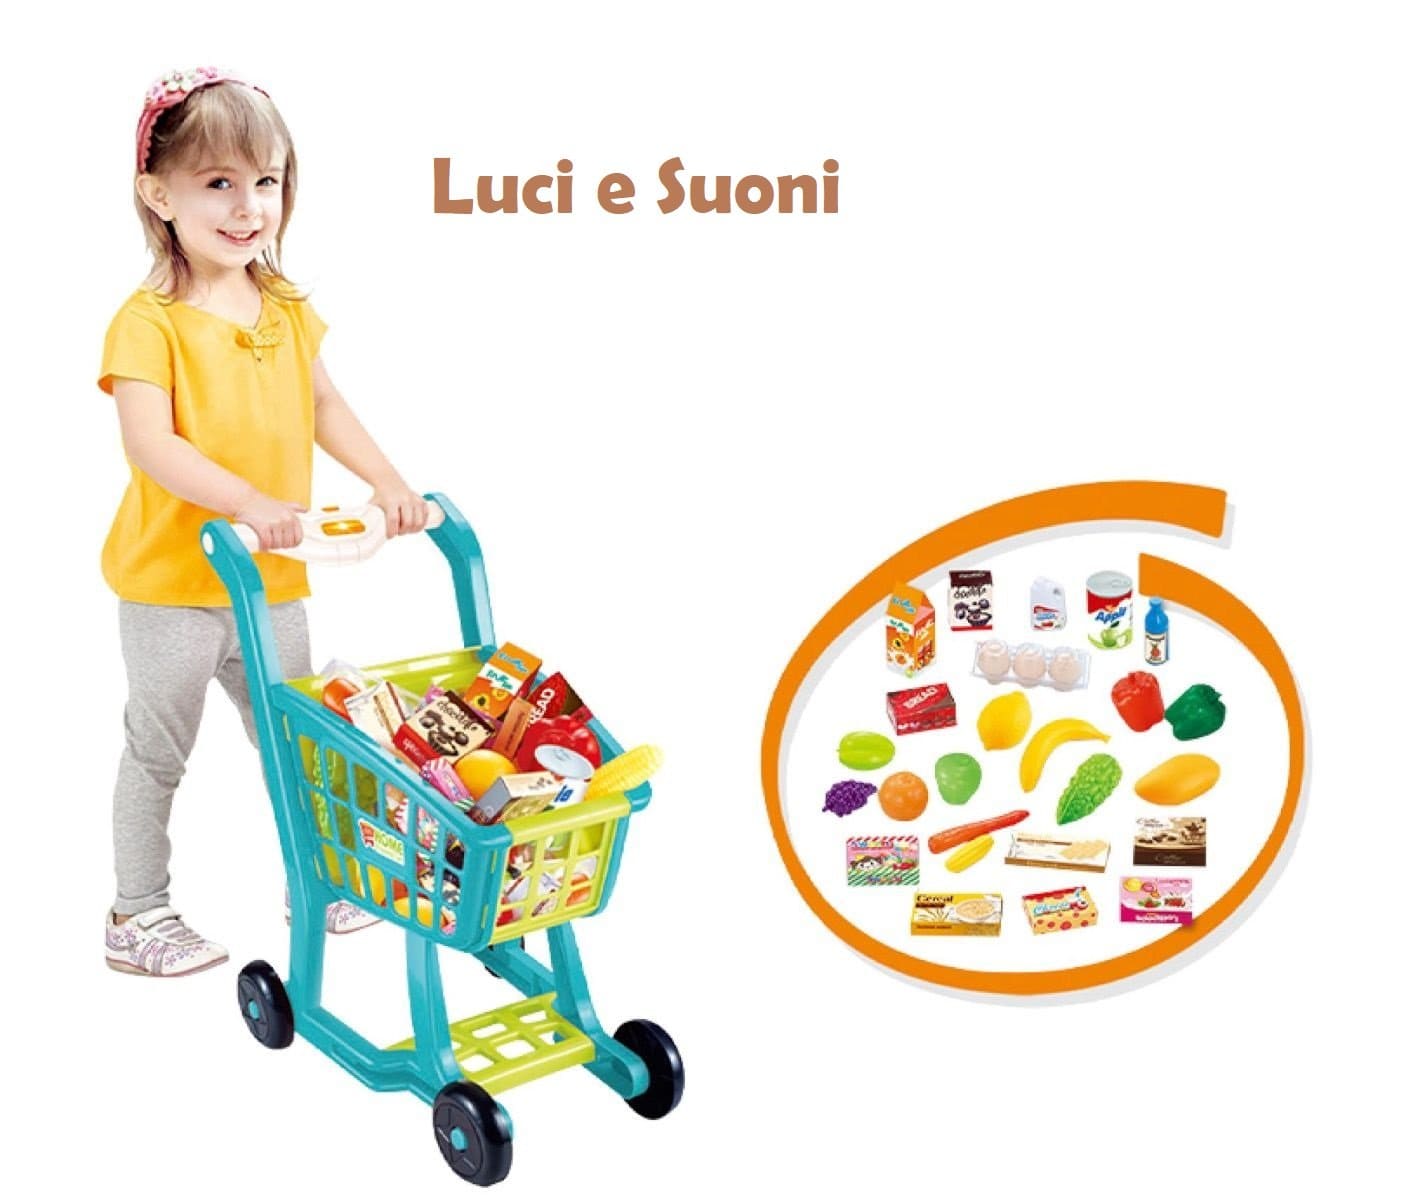 Carrello Spesa con Luci, Suoni e Alimenti Giocattolo – The Toys Store